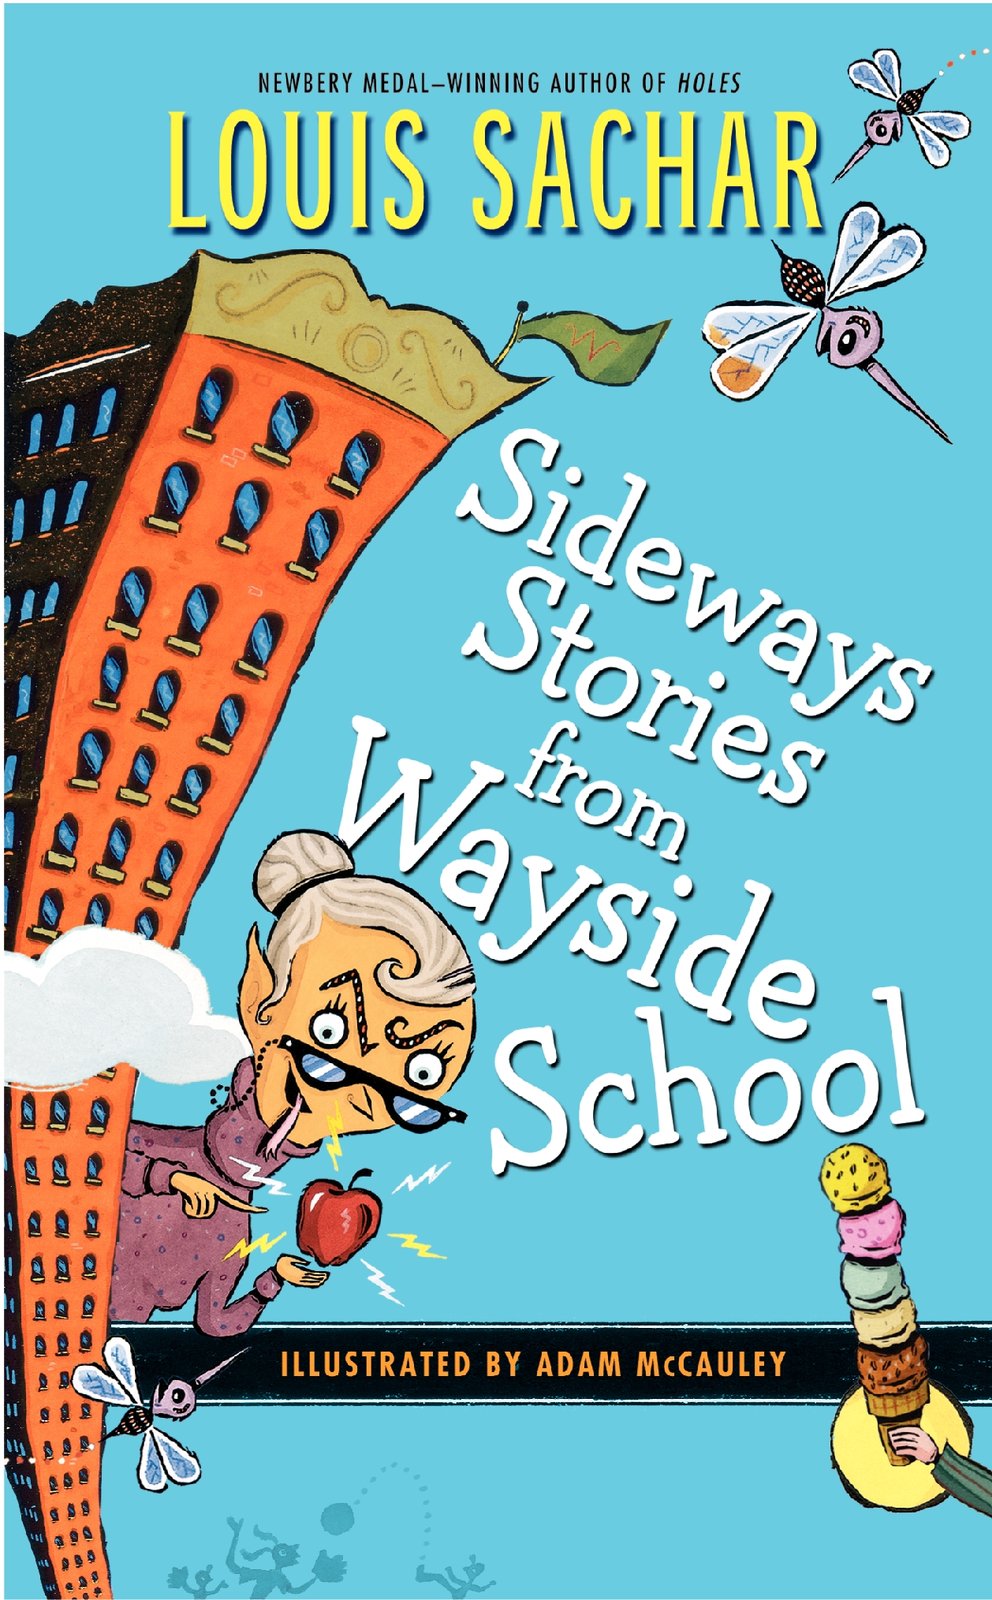 Sideways Stories From Wayside School Wayside School is Falling -  Israel